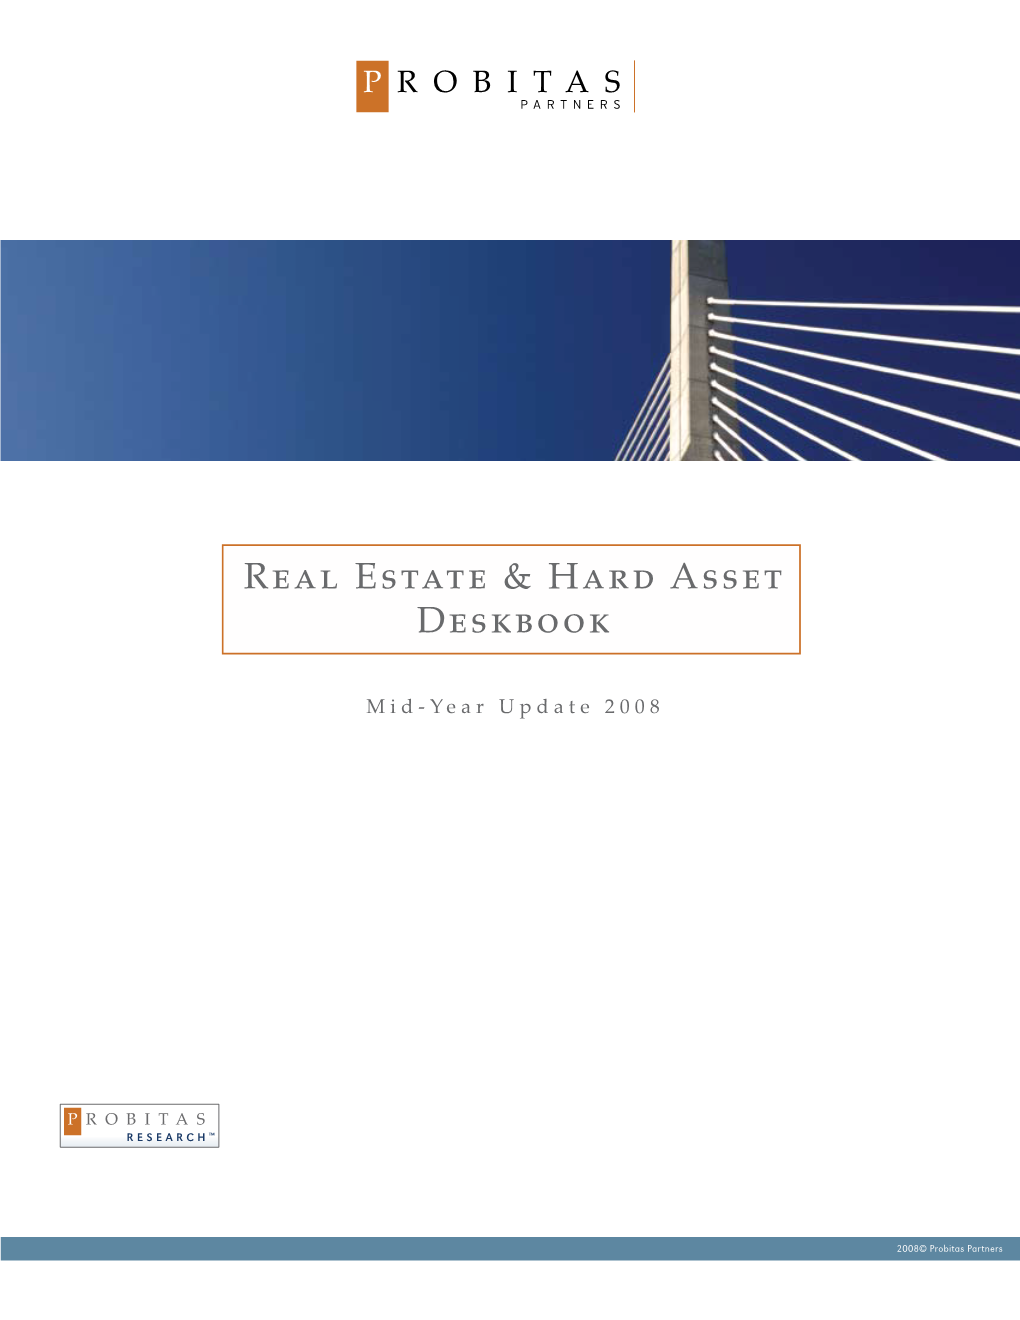 Real Estate & Hard Asset Deskbook